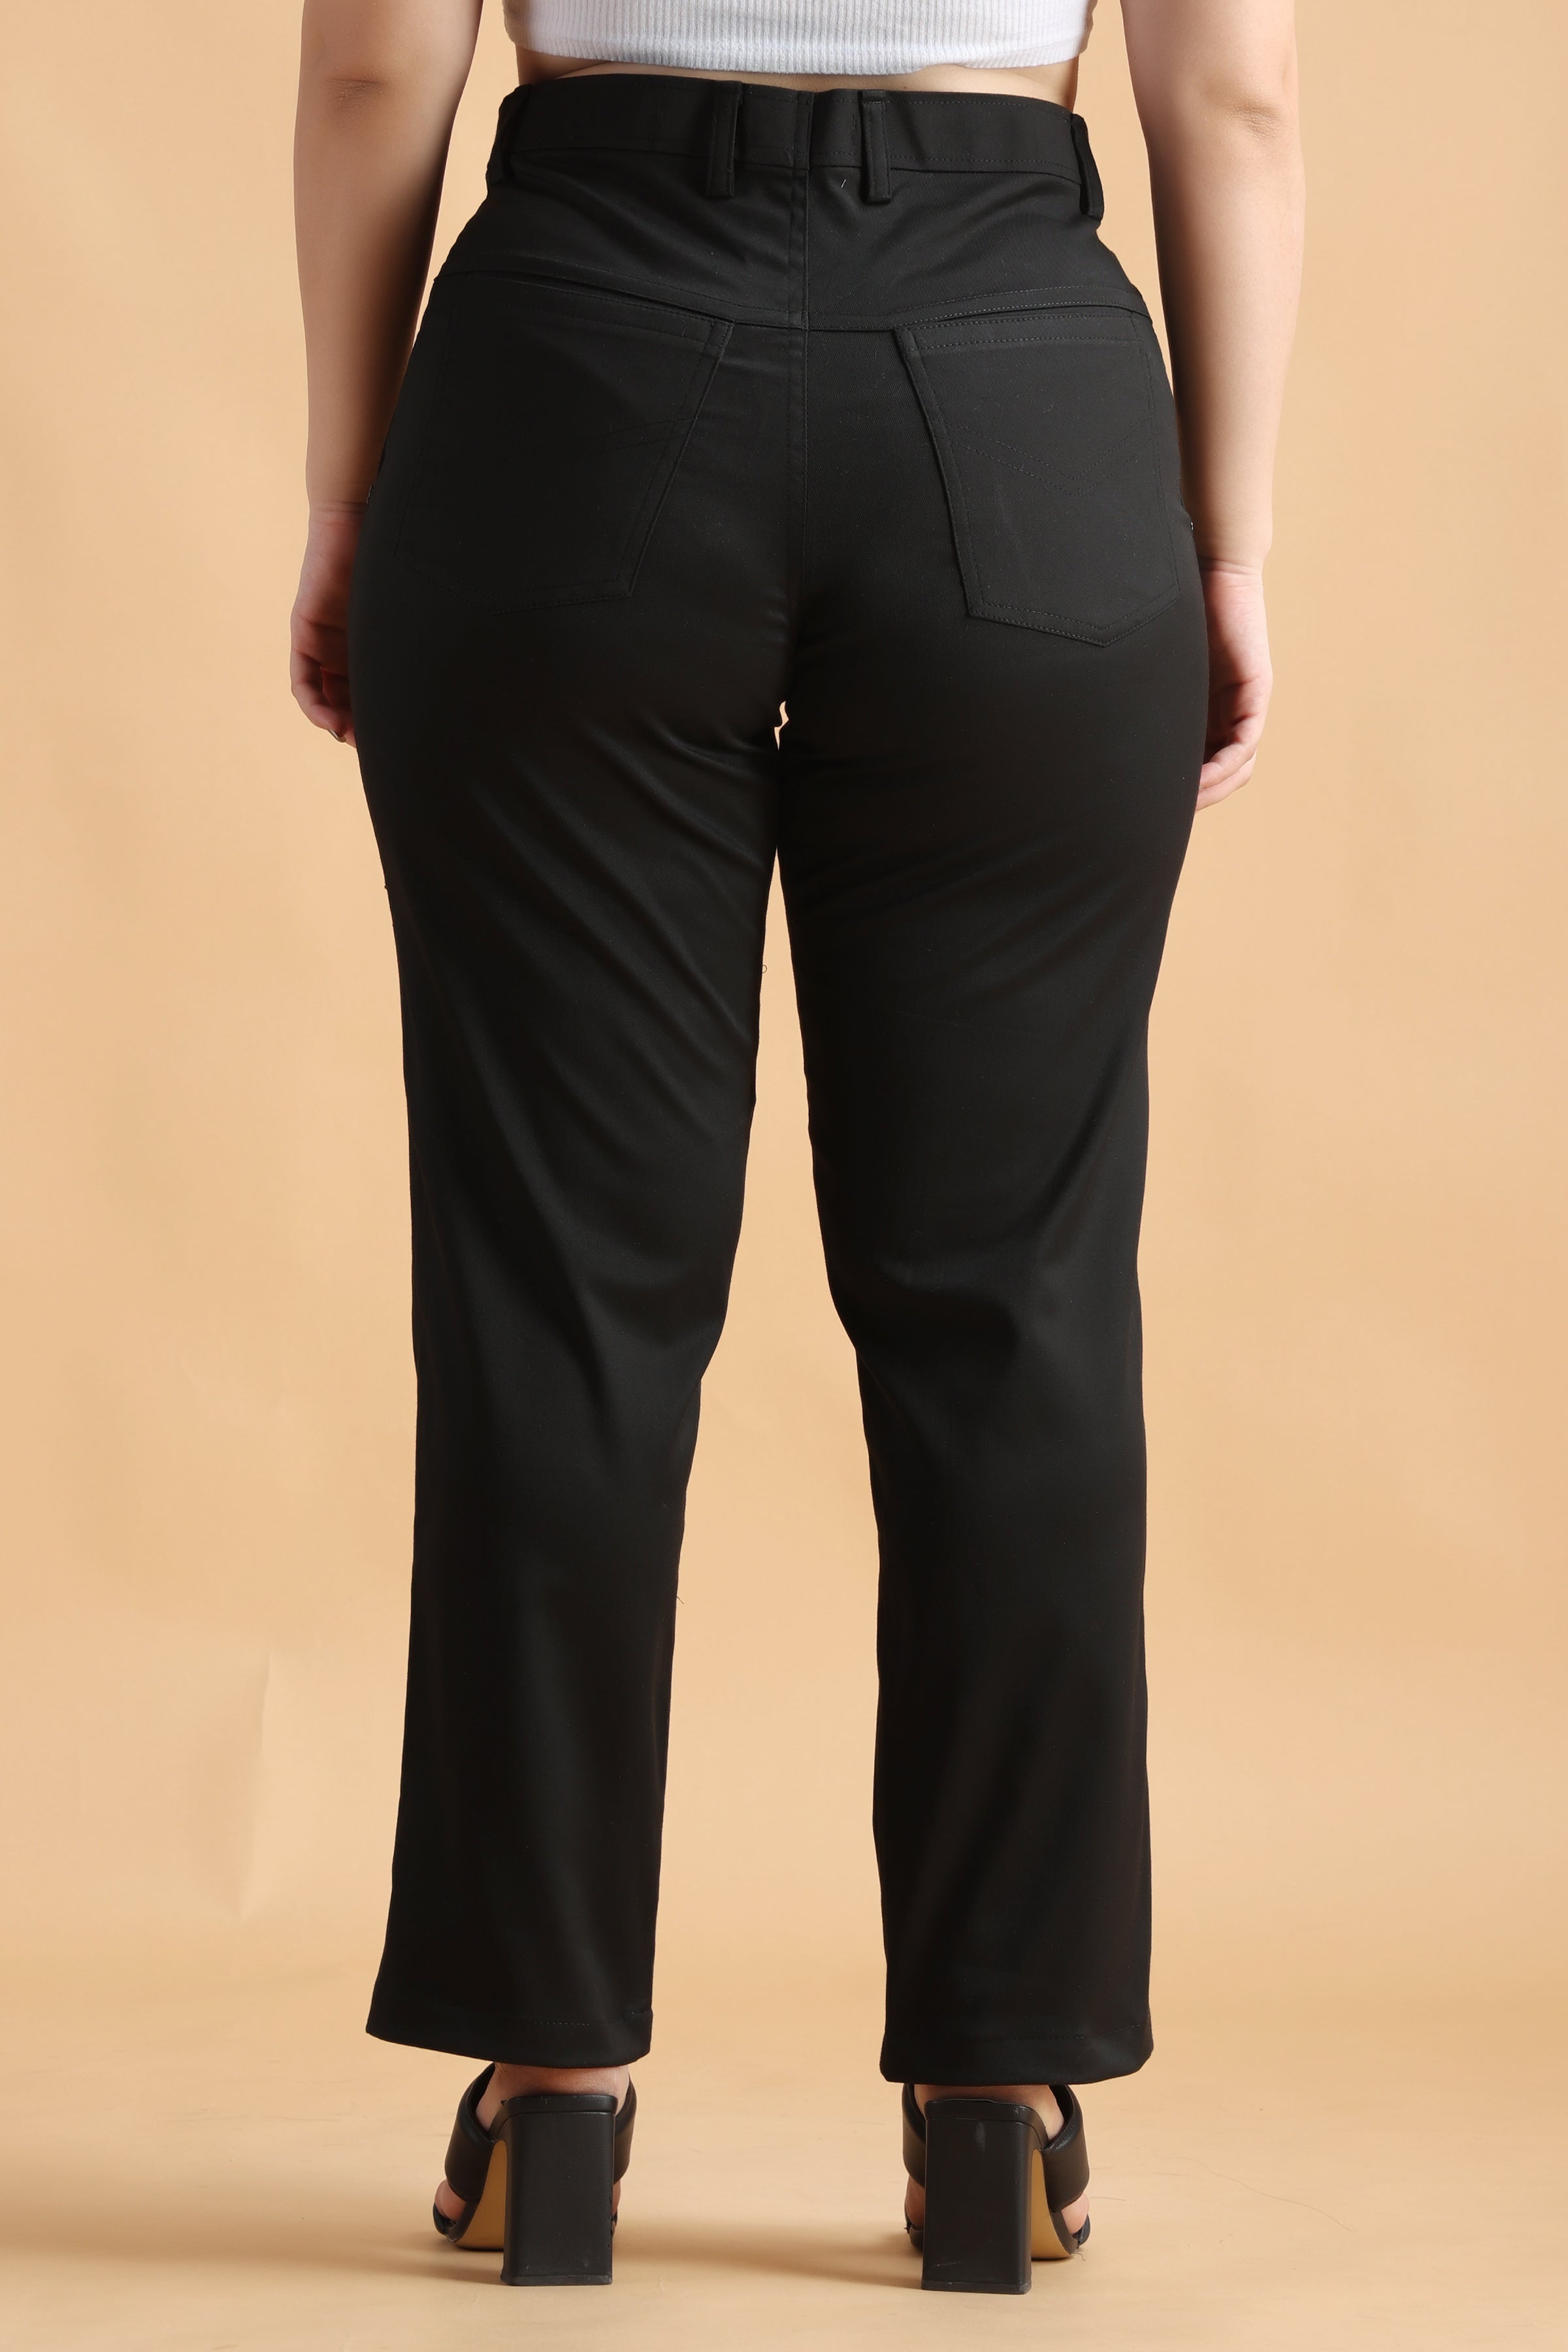 Buy Black Trousers  Pants for Women by AJIO Online  Ajiocom